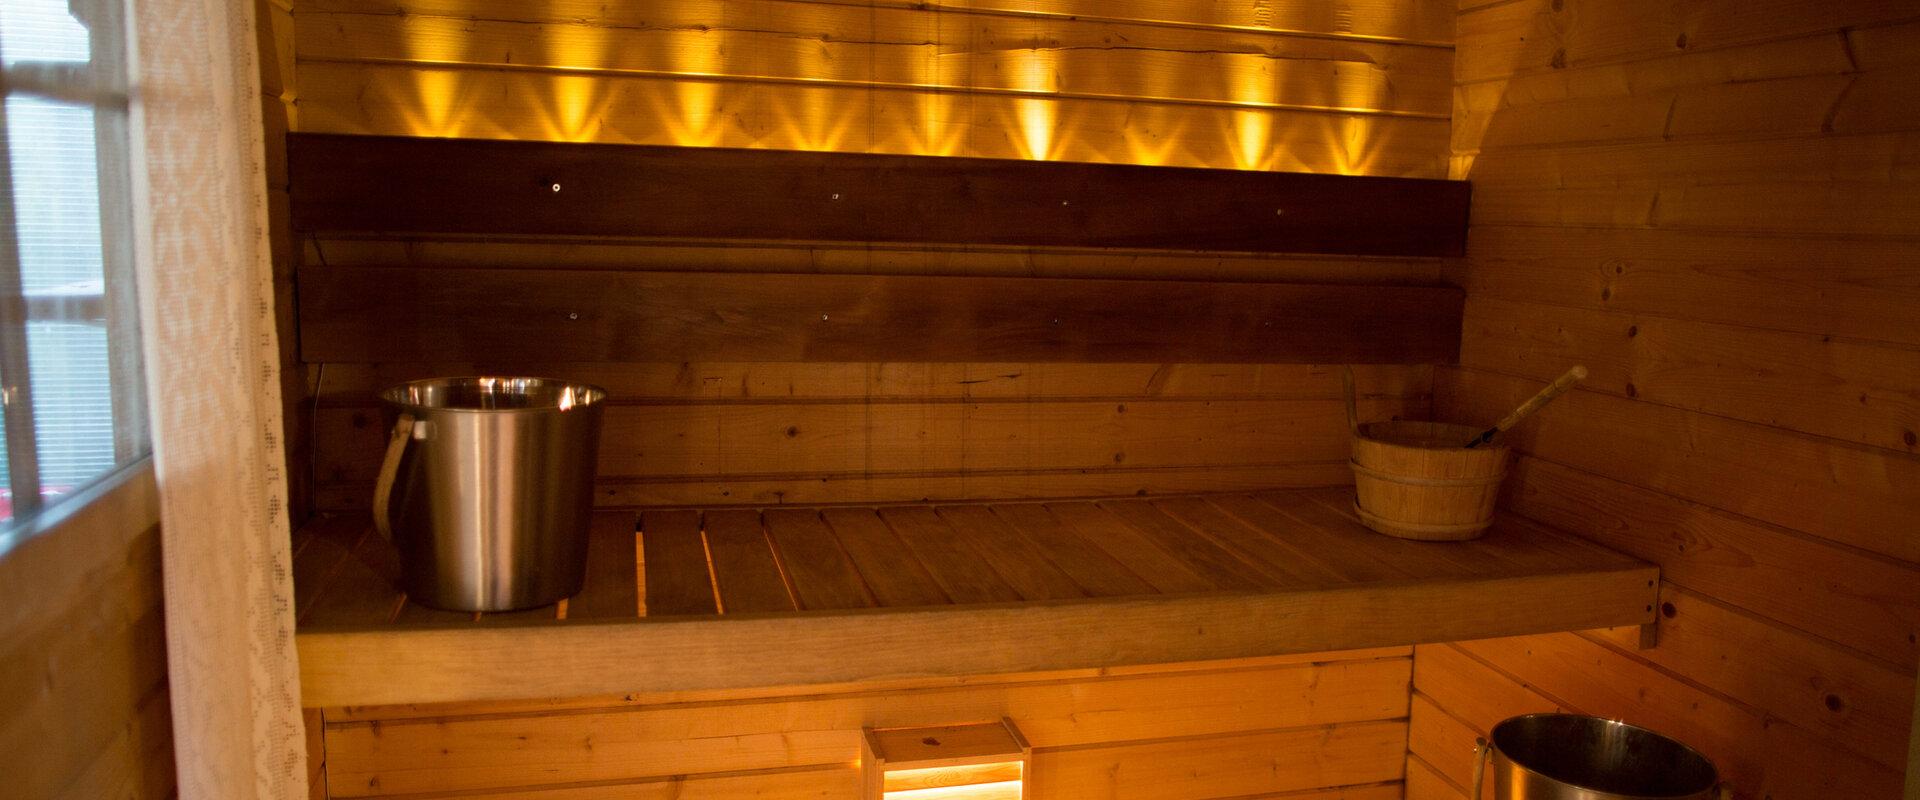 Puhkekompleksis asuva sauna leiliruum